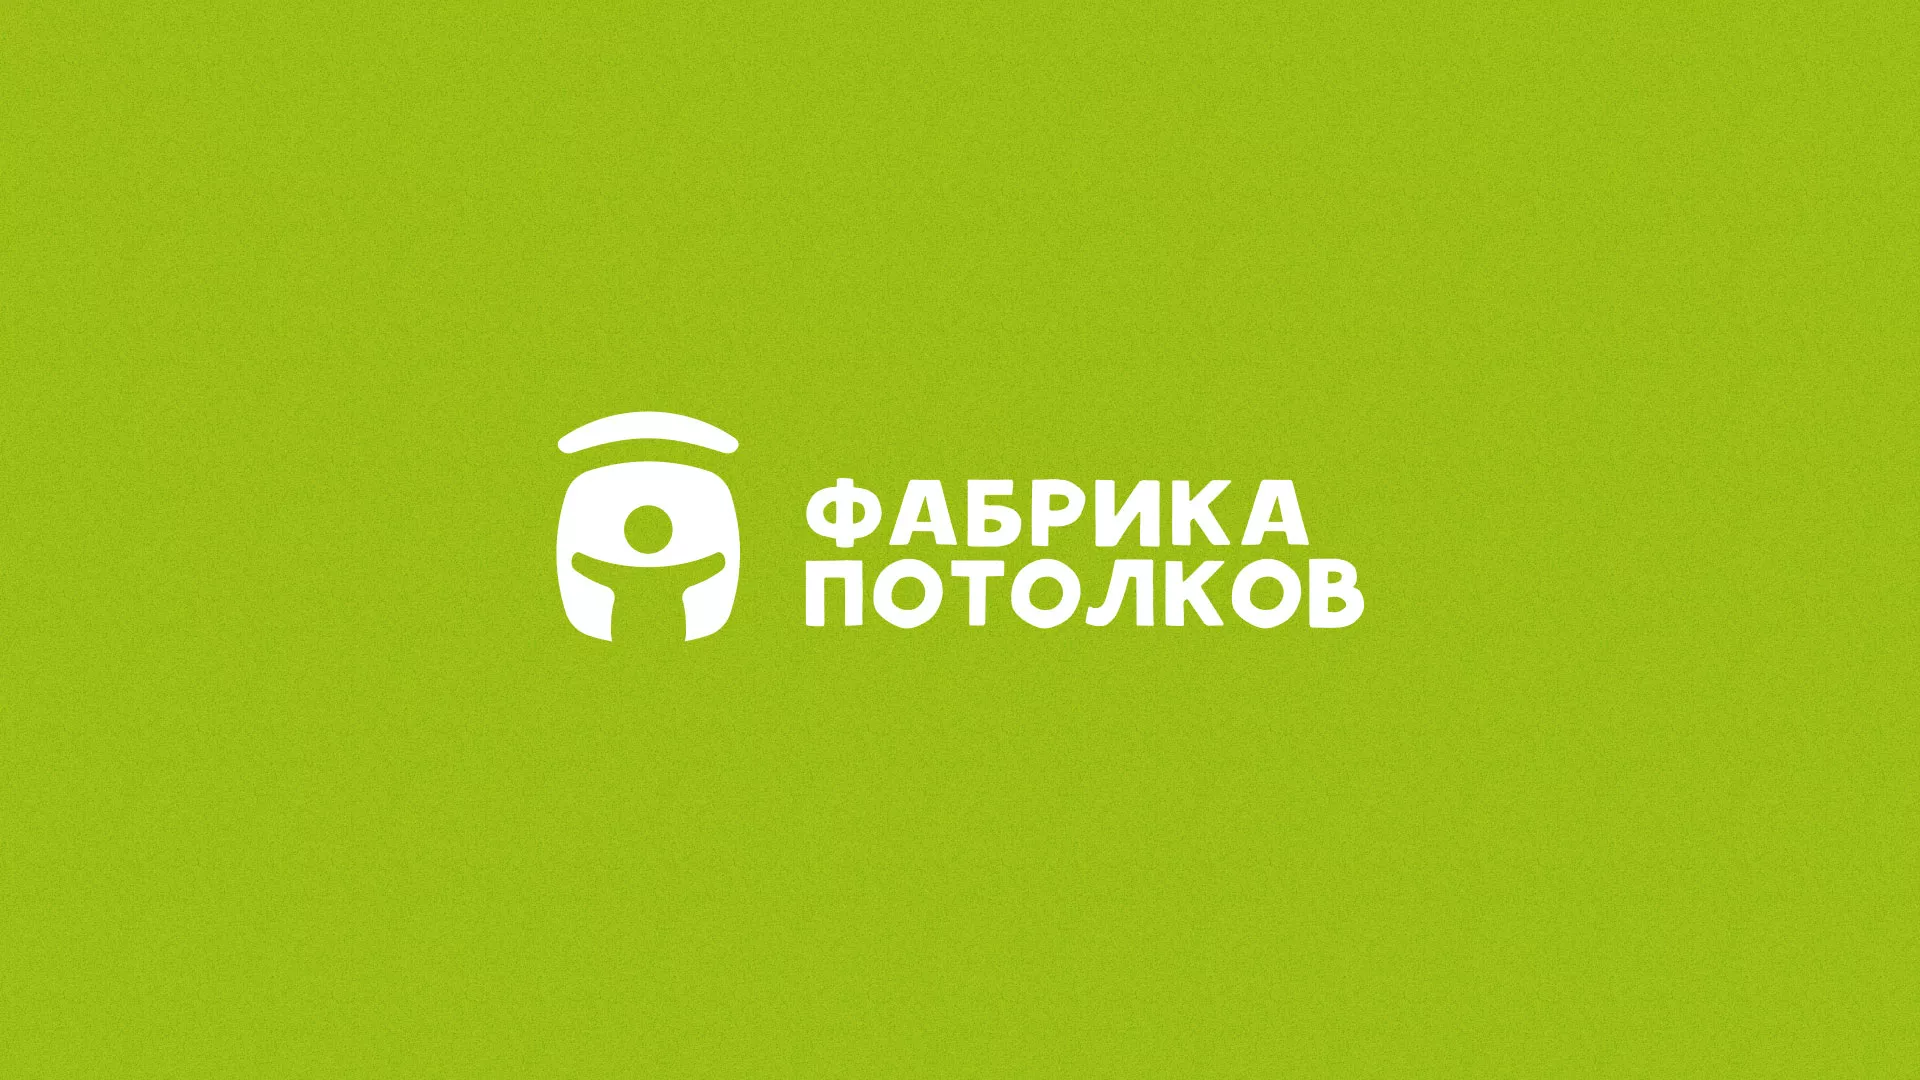 Разработка логотипа для производства натяжных потолков в Одинцово